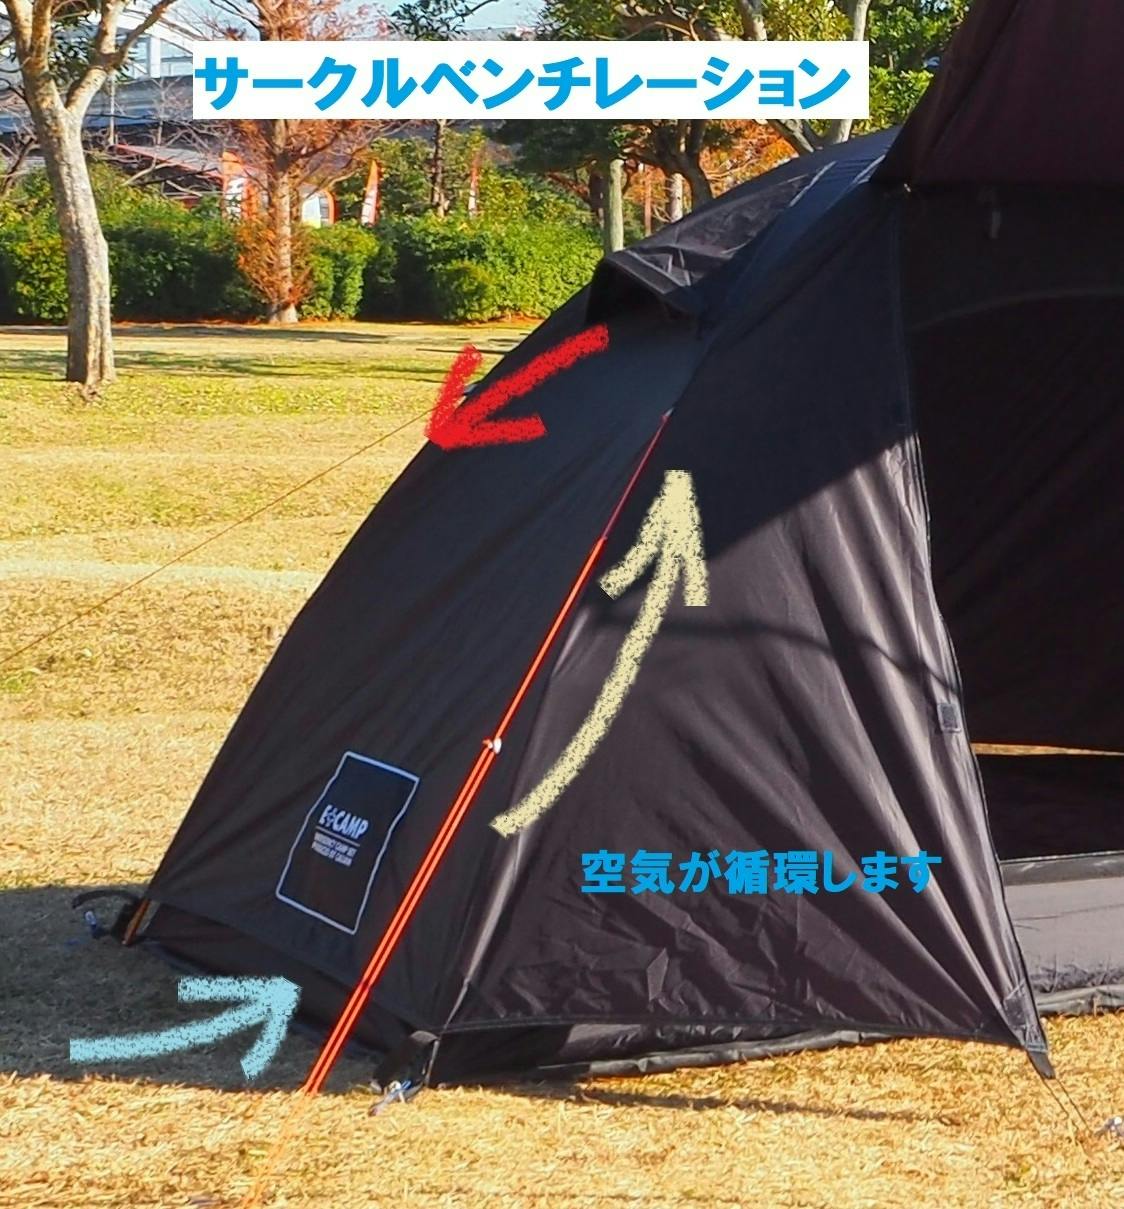 キャリアン CALIAN E+CAMPソロキャンプセット テント - テント